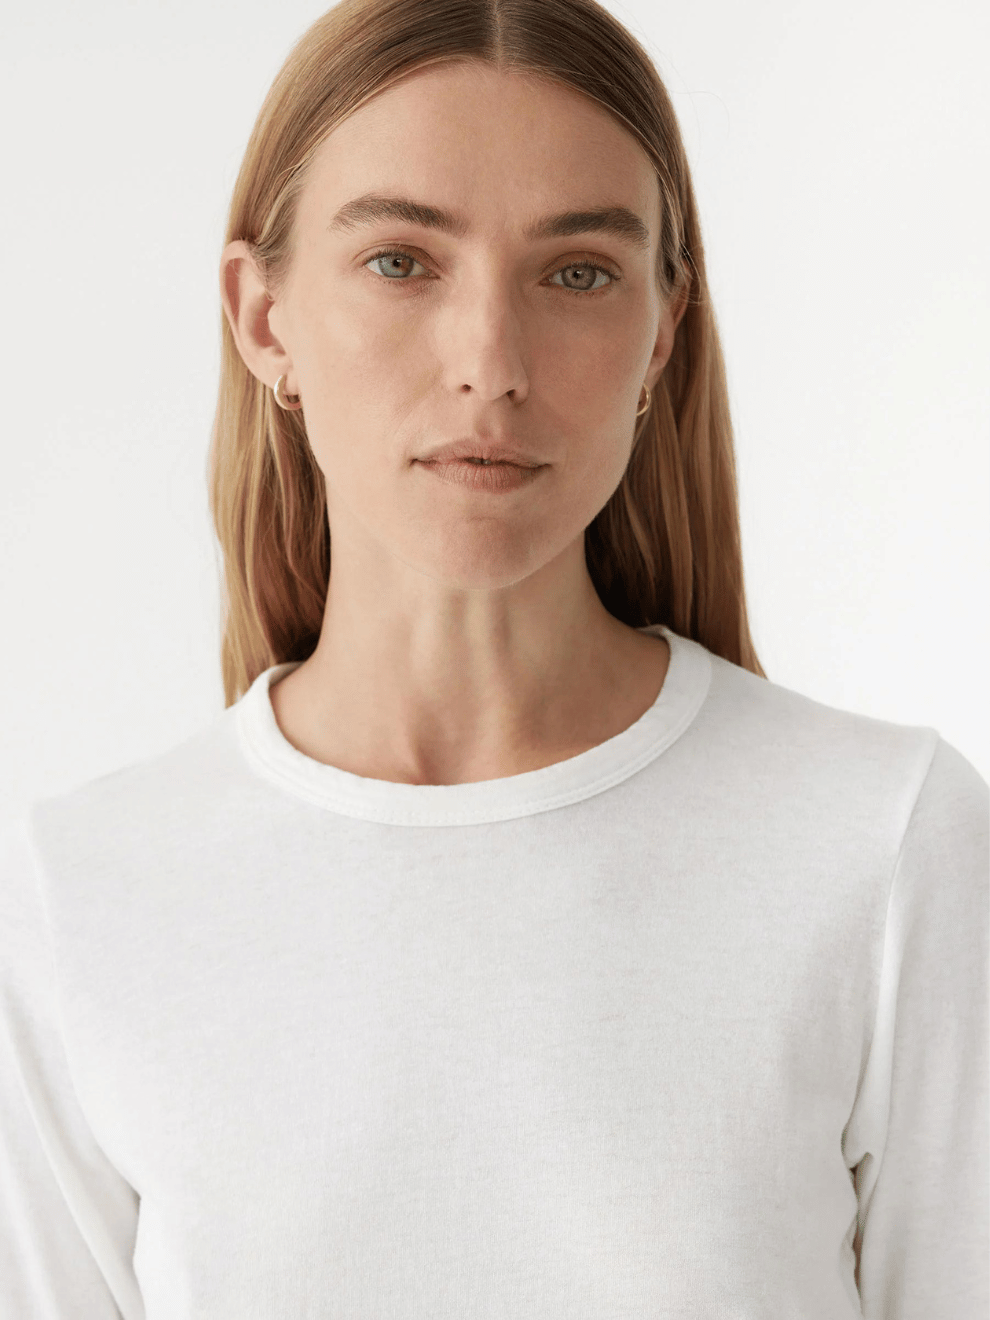 Asymmetric Split Long Sleeve T-Shirt in White